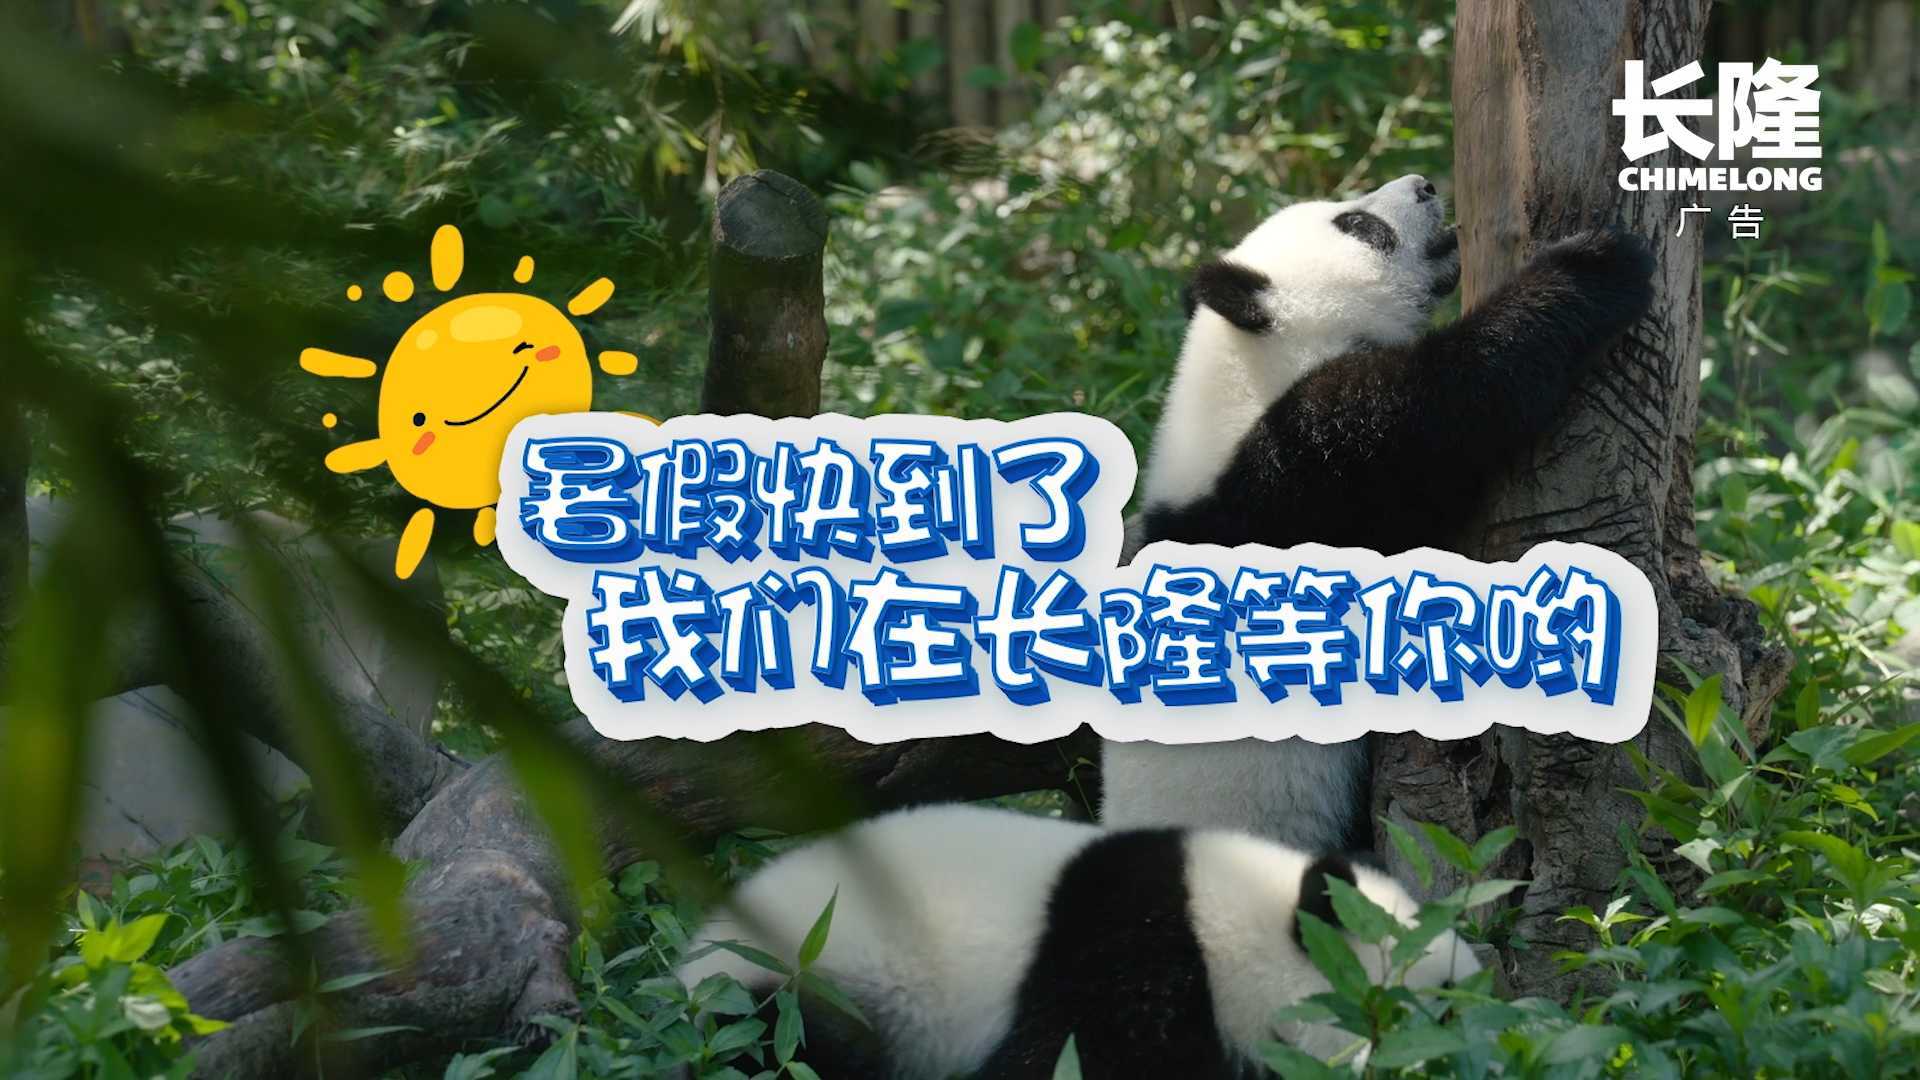 长隆少儿频道儿歌篇-熊猫